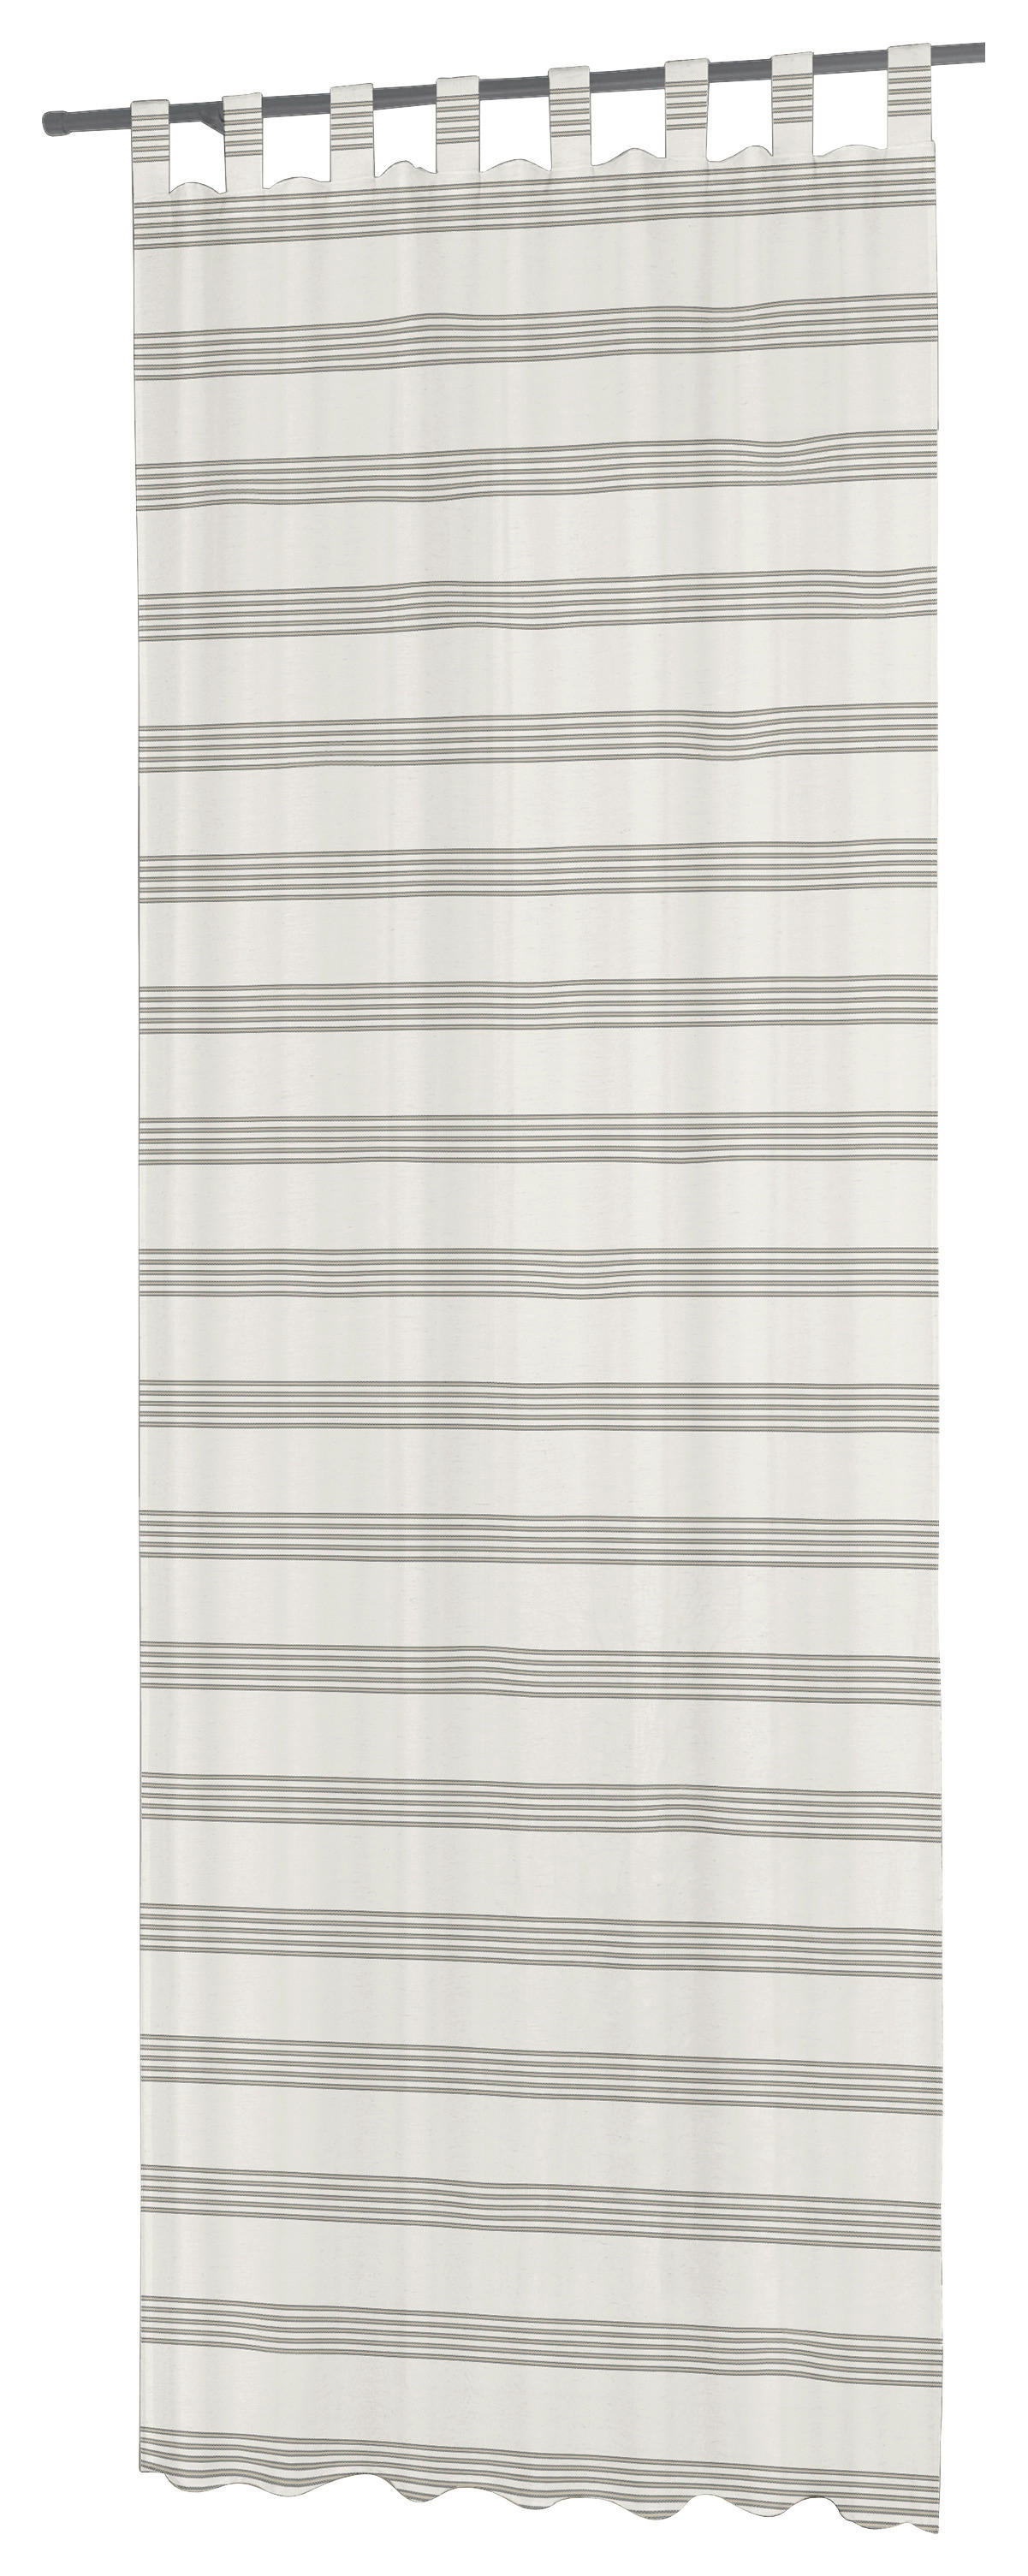 Esposa ZÁVĚS S POUTKY, neprůsvitné, 140/245 cm - šedá, přírodní barvy